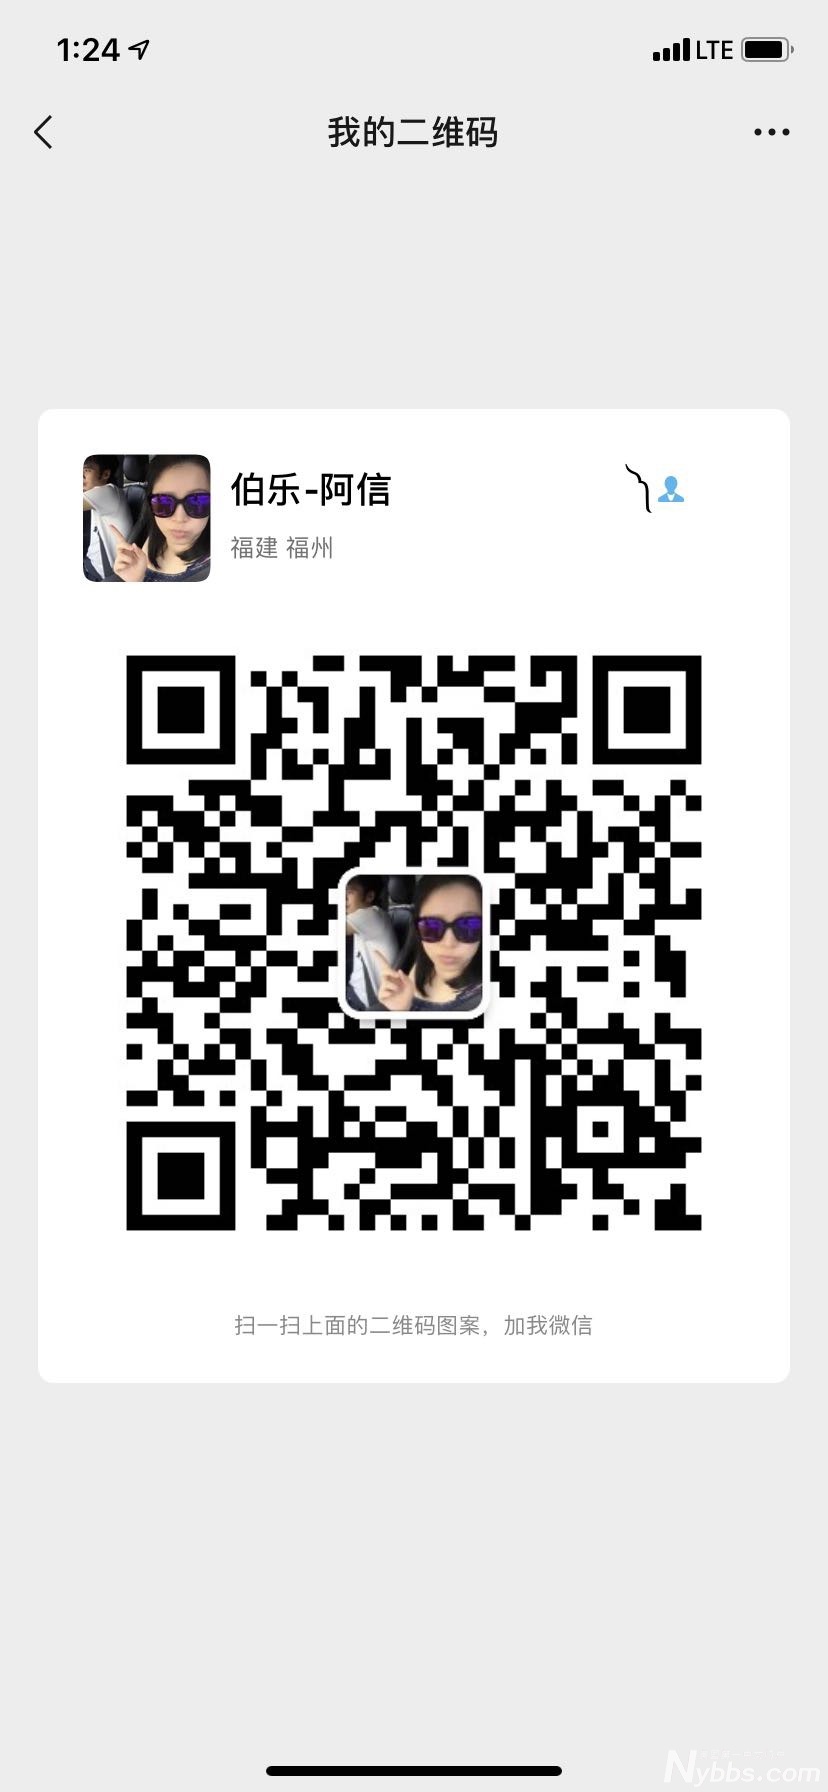 WeChat Image_20190714132355.jpg